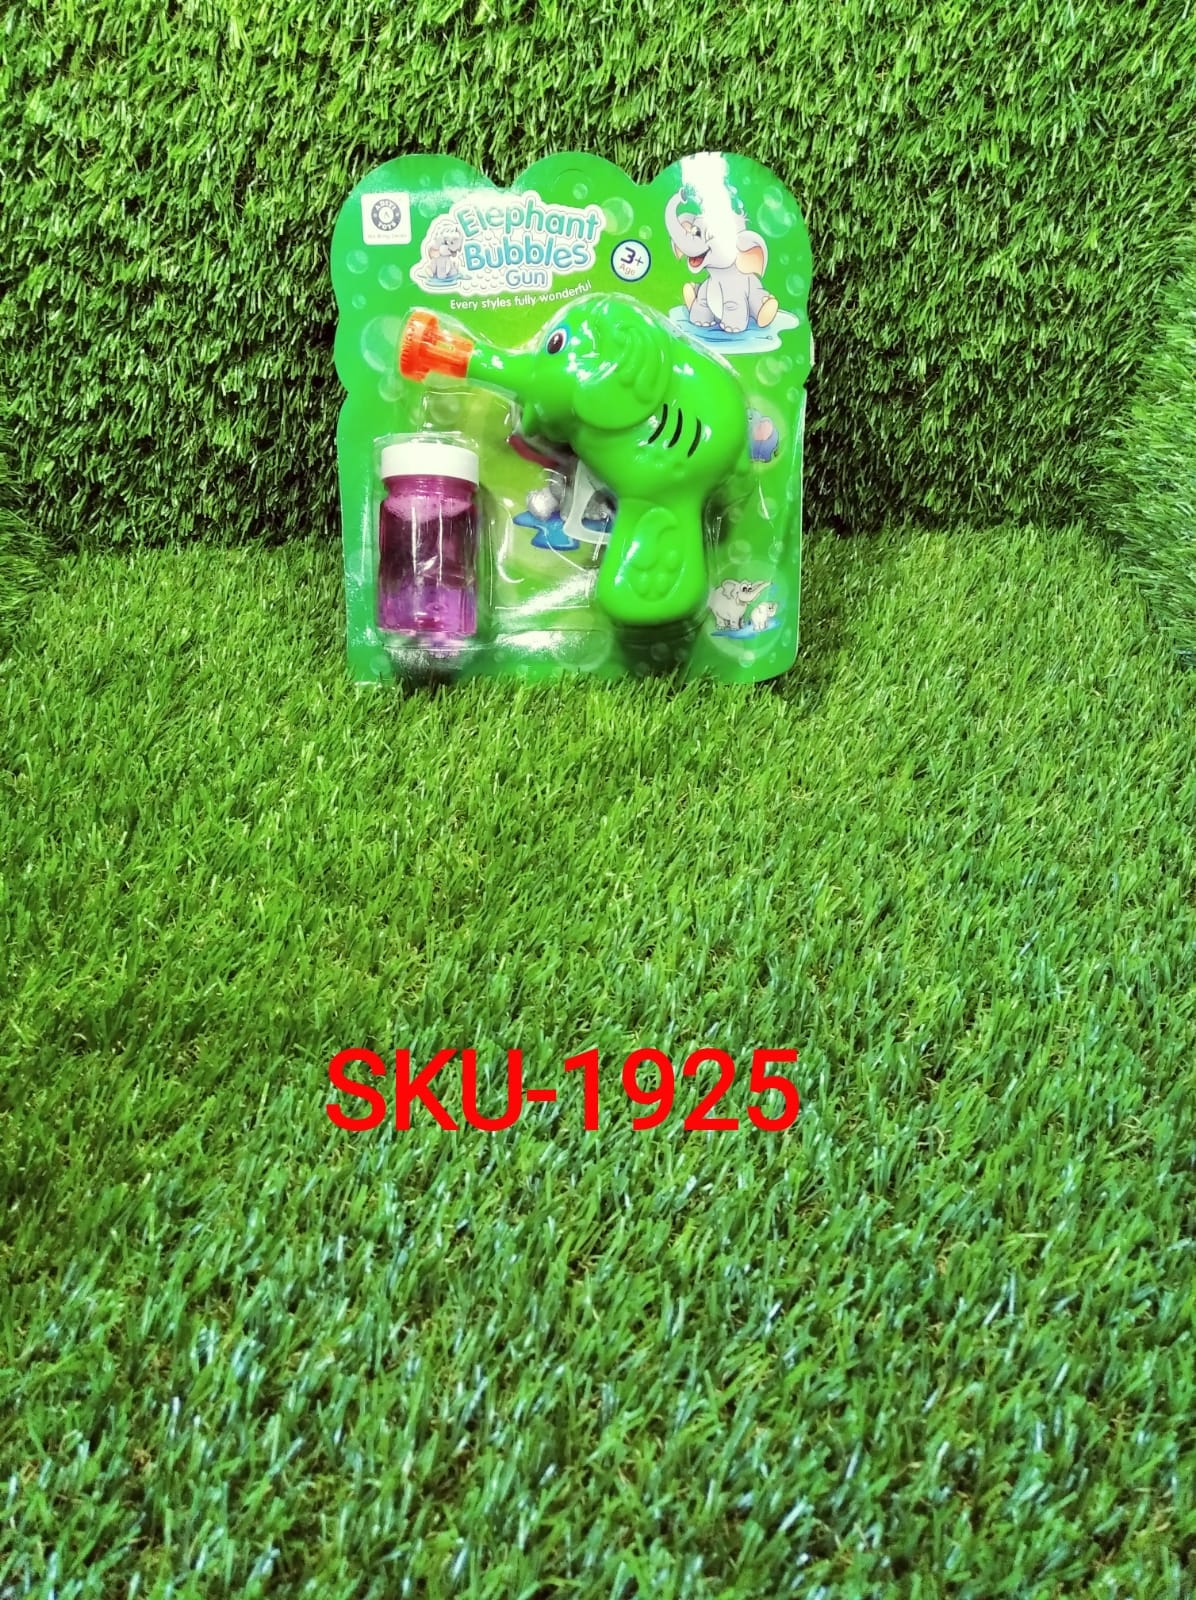 1925 elephant bubble gun for kids / kids toys bubble gun Toy Bubble Maker DeoDap